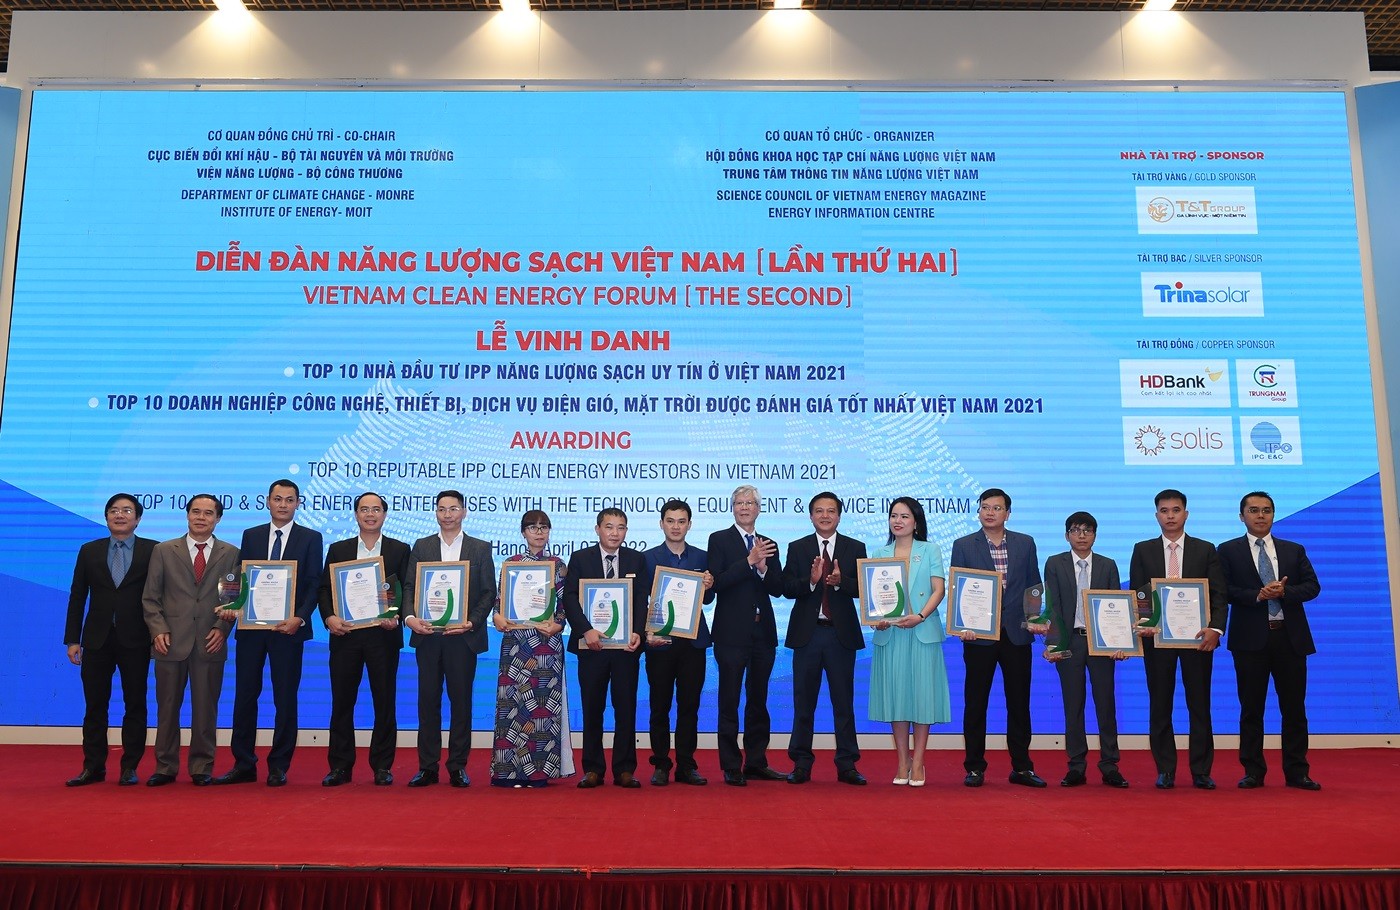 Trung hòa carbon 2050 - Cơ chế cho các dự án điện sạch ở Việt Nam